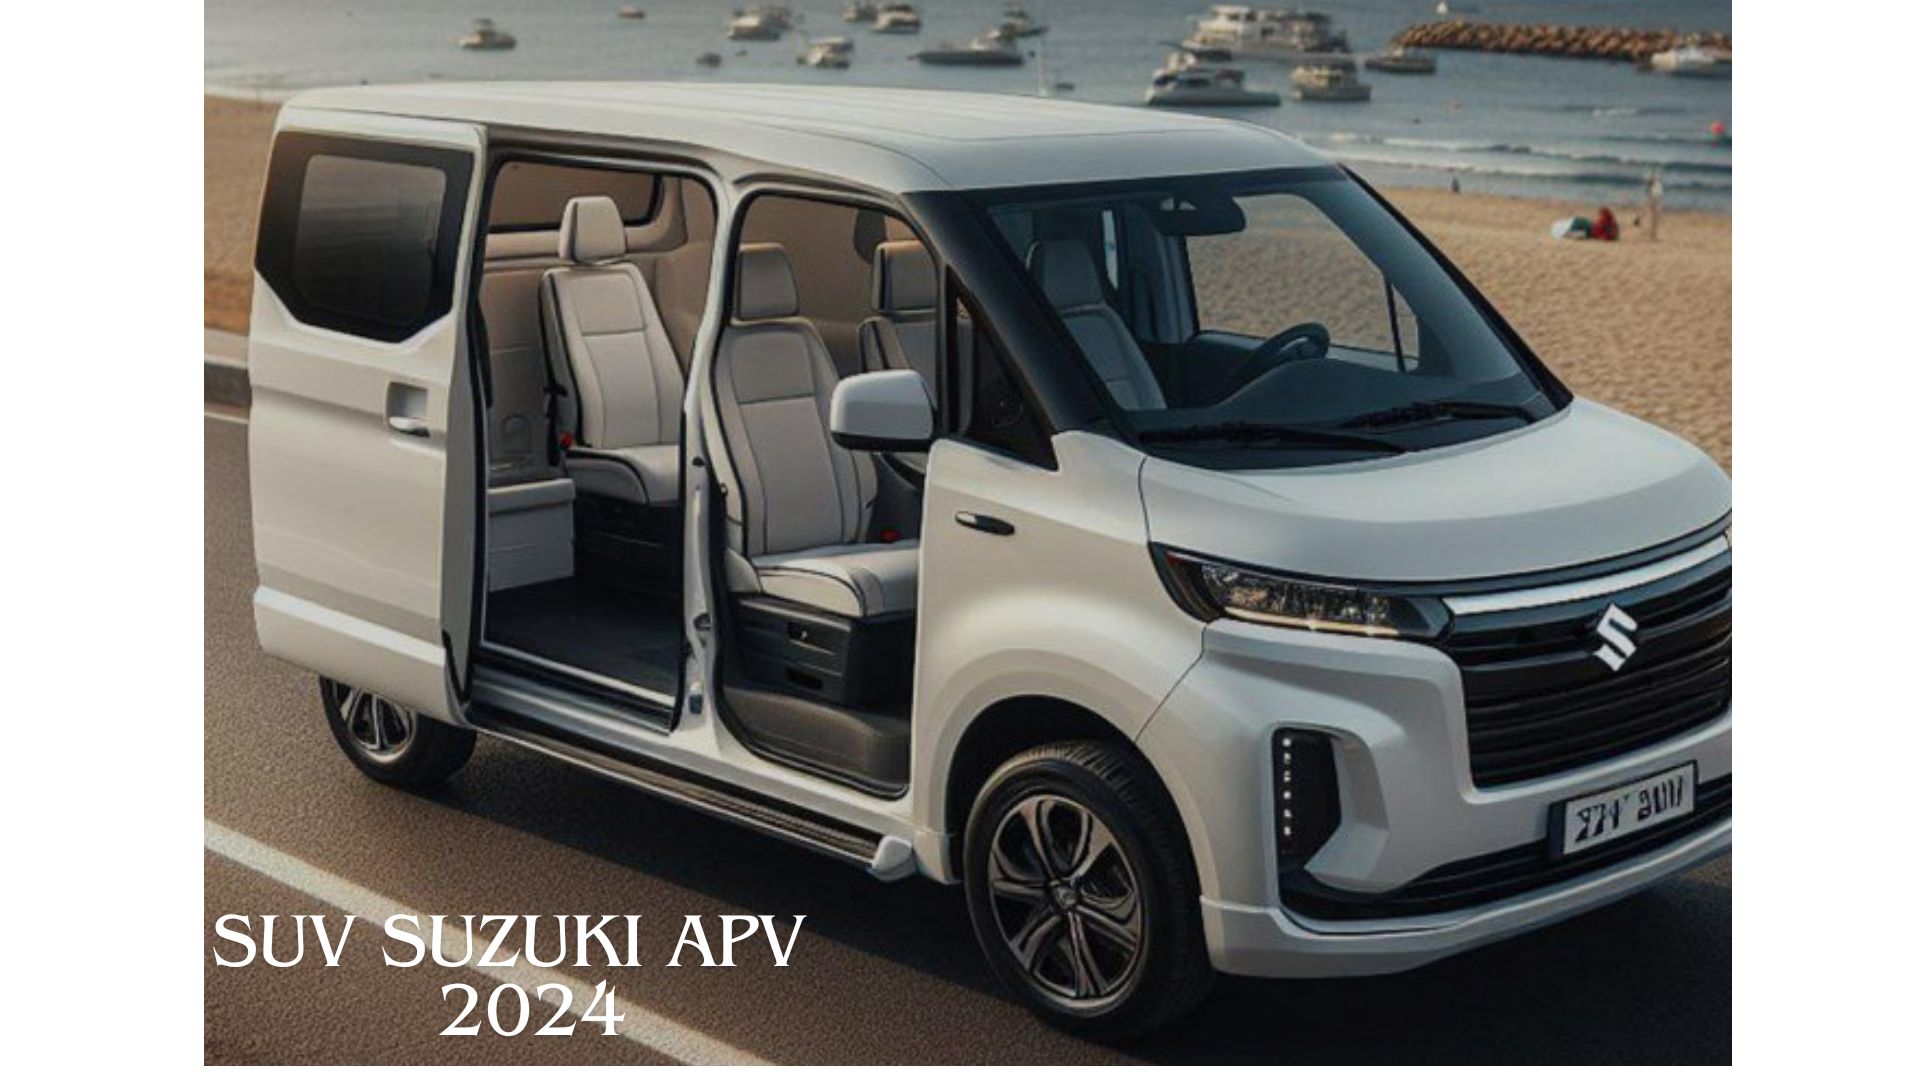 SUV Suzuki APV 2024, Tampilan Modis dan Nyaman yang Jadi Incaran Mobil Keluarga Bermanfaat